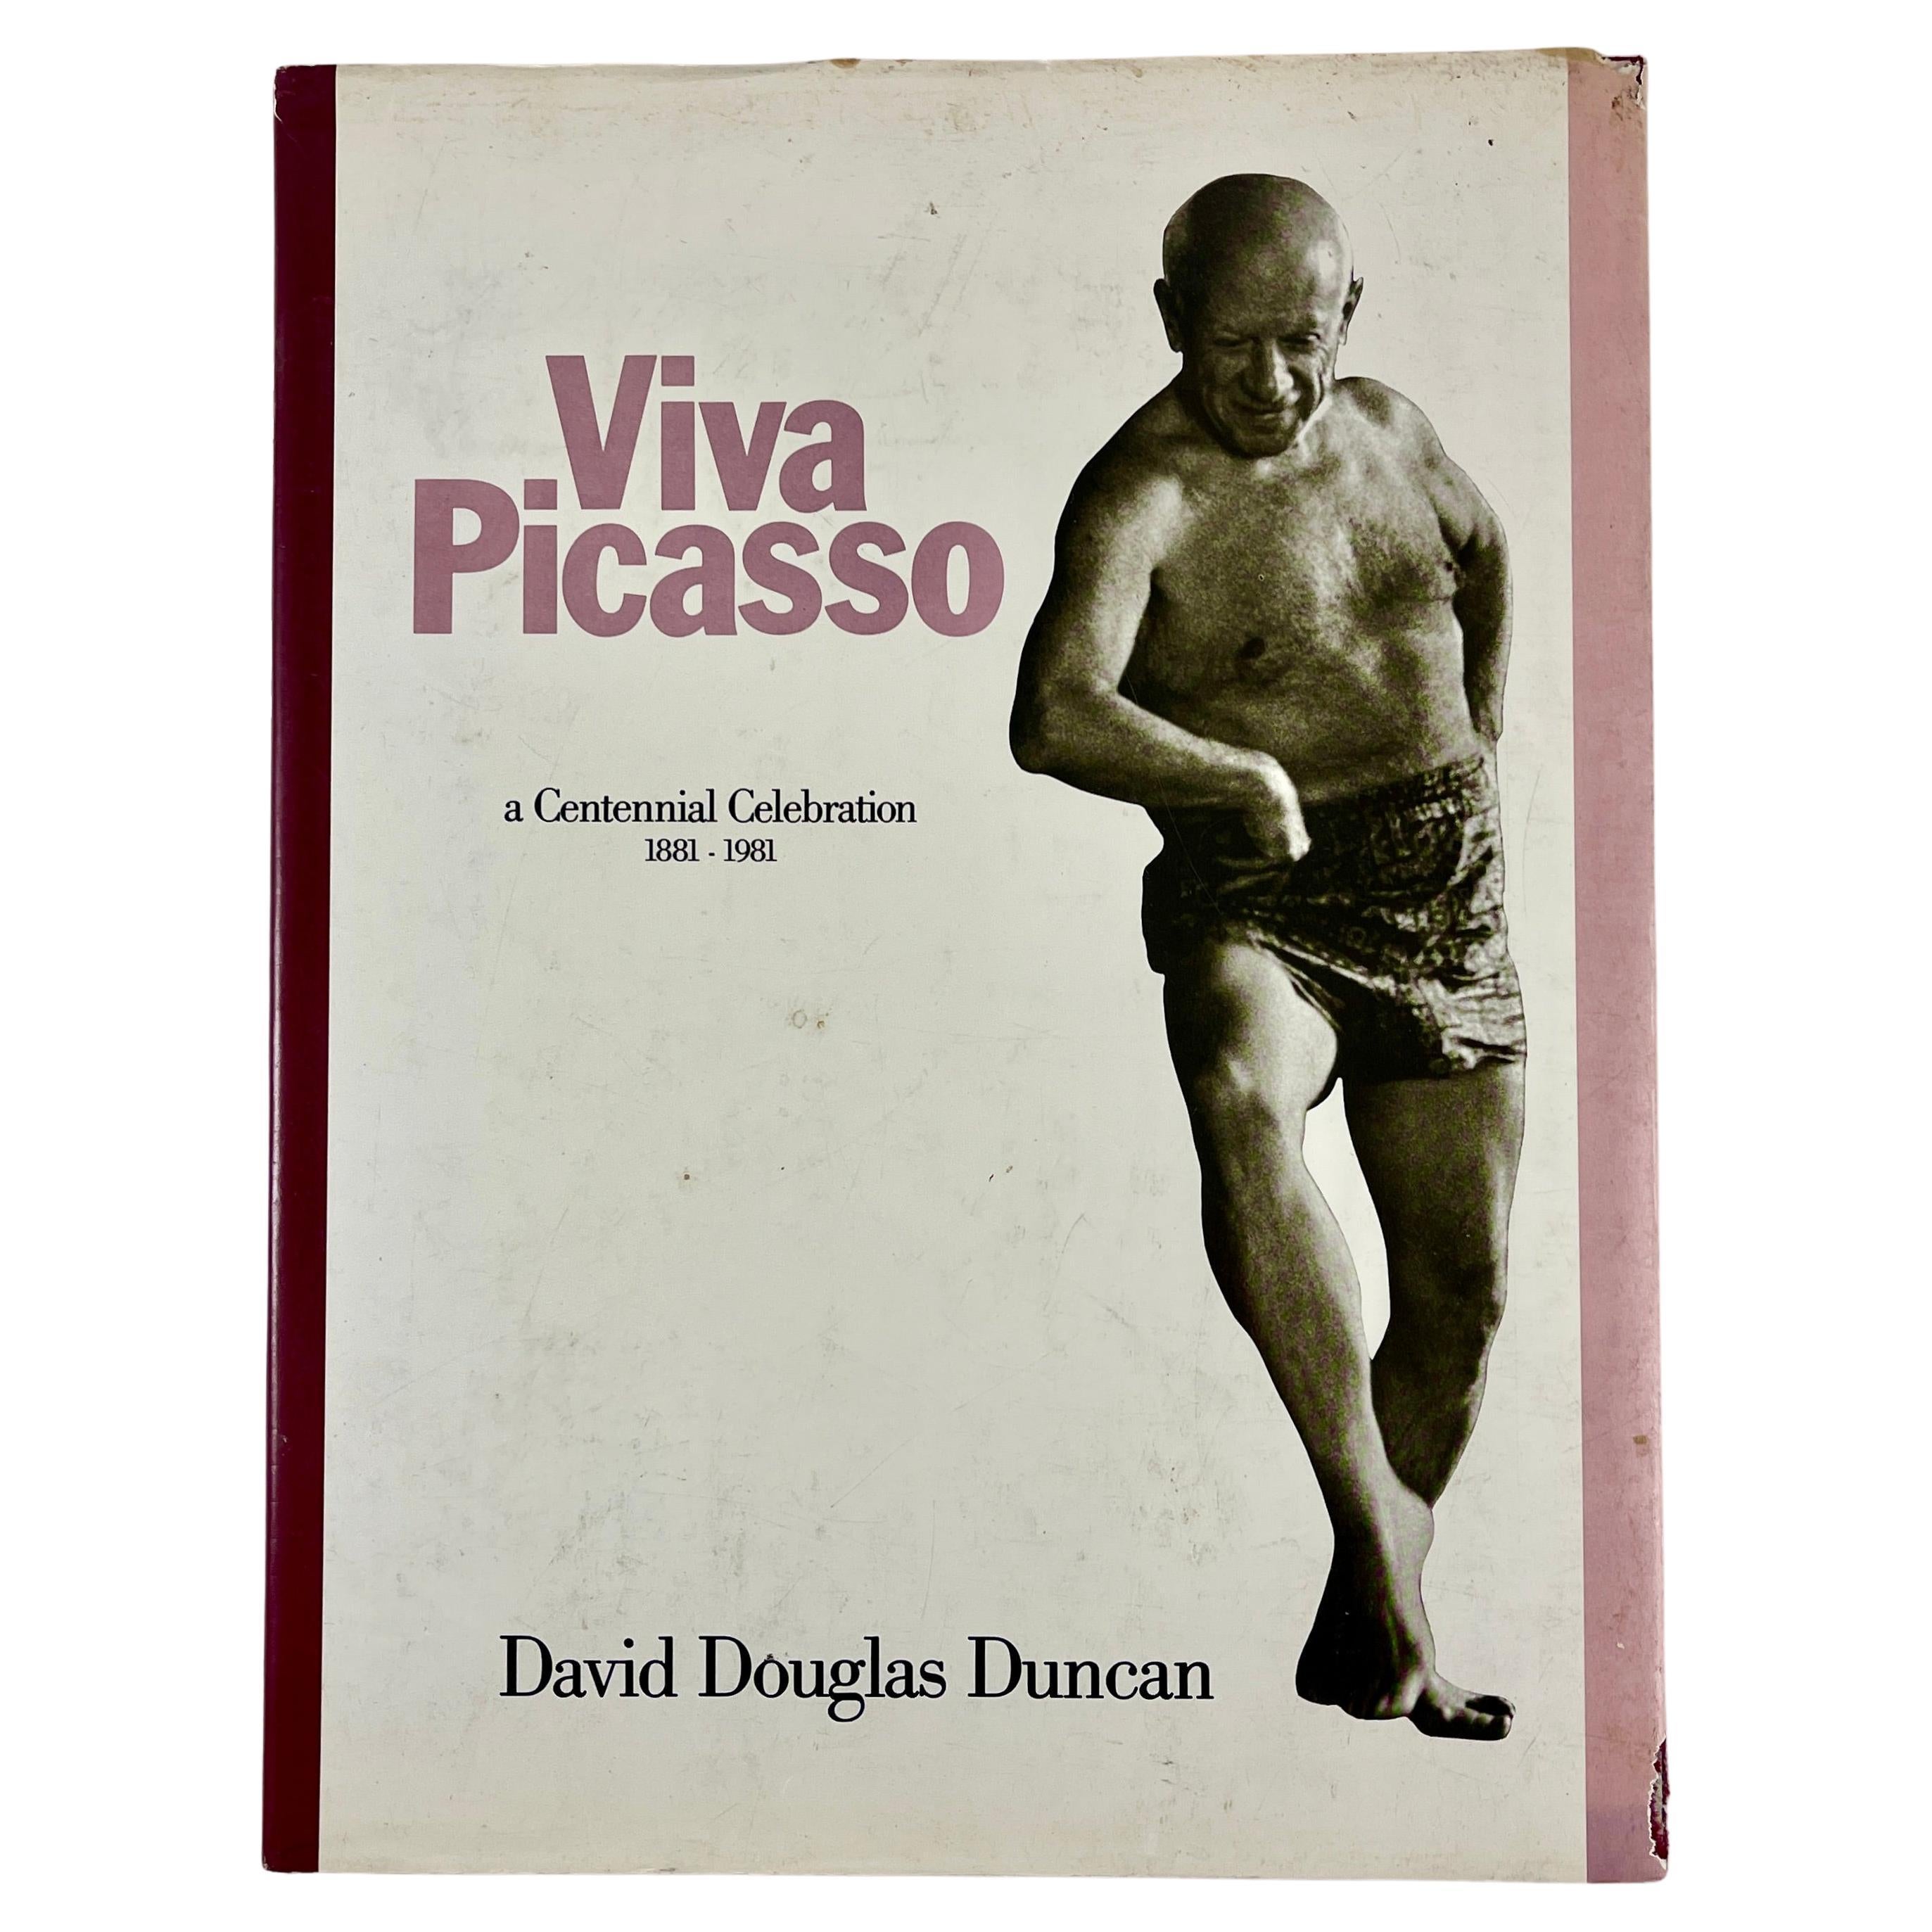 Viva Picasso : une célébration du centenaire - Livre à couverture rigide 1881-1981 avec veste